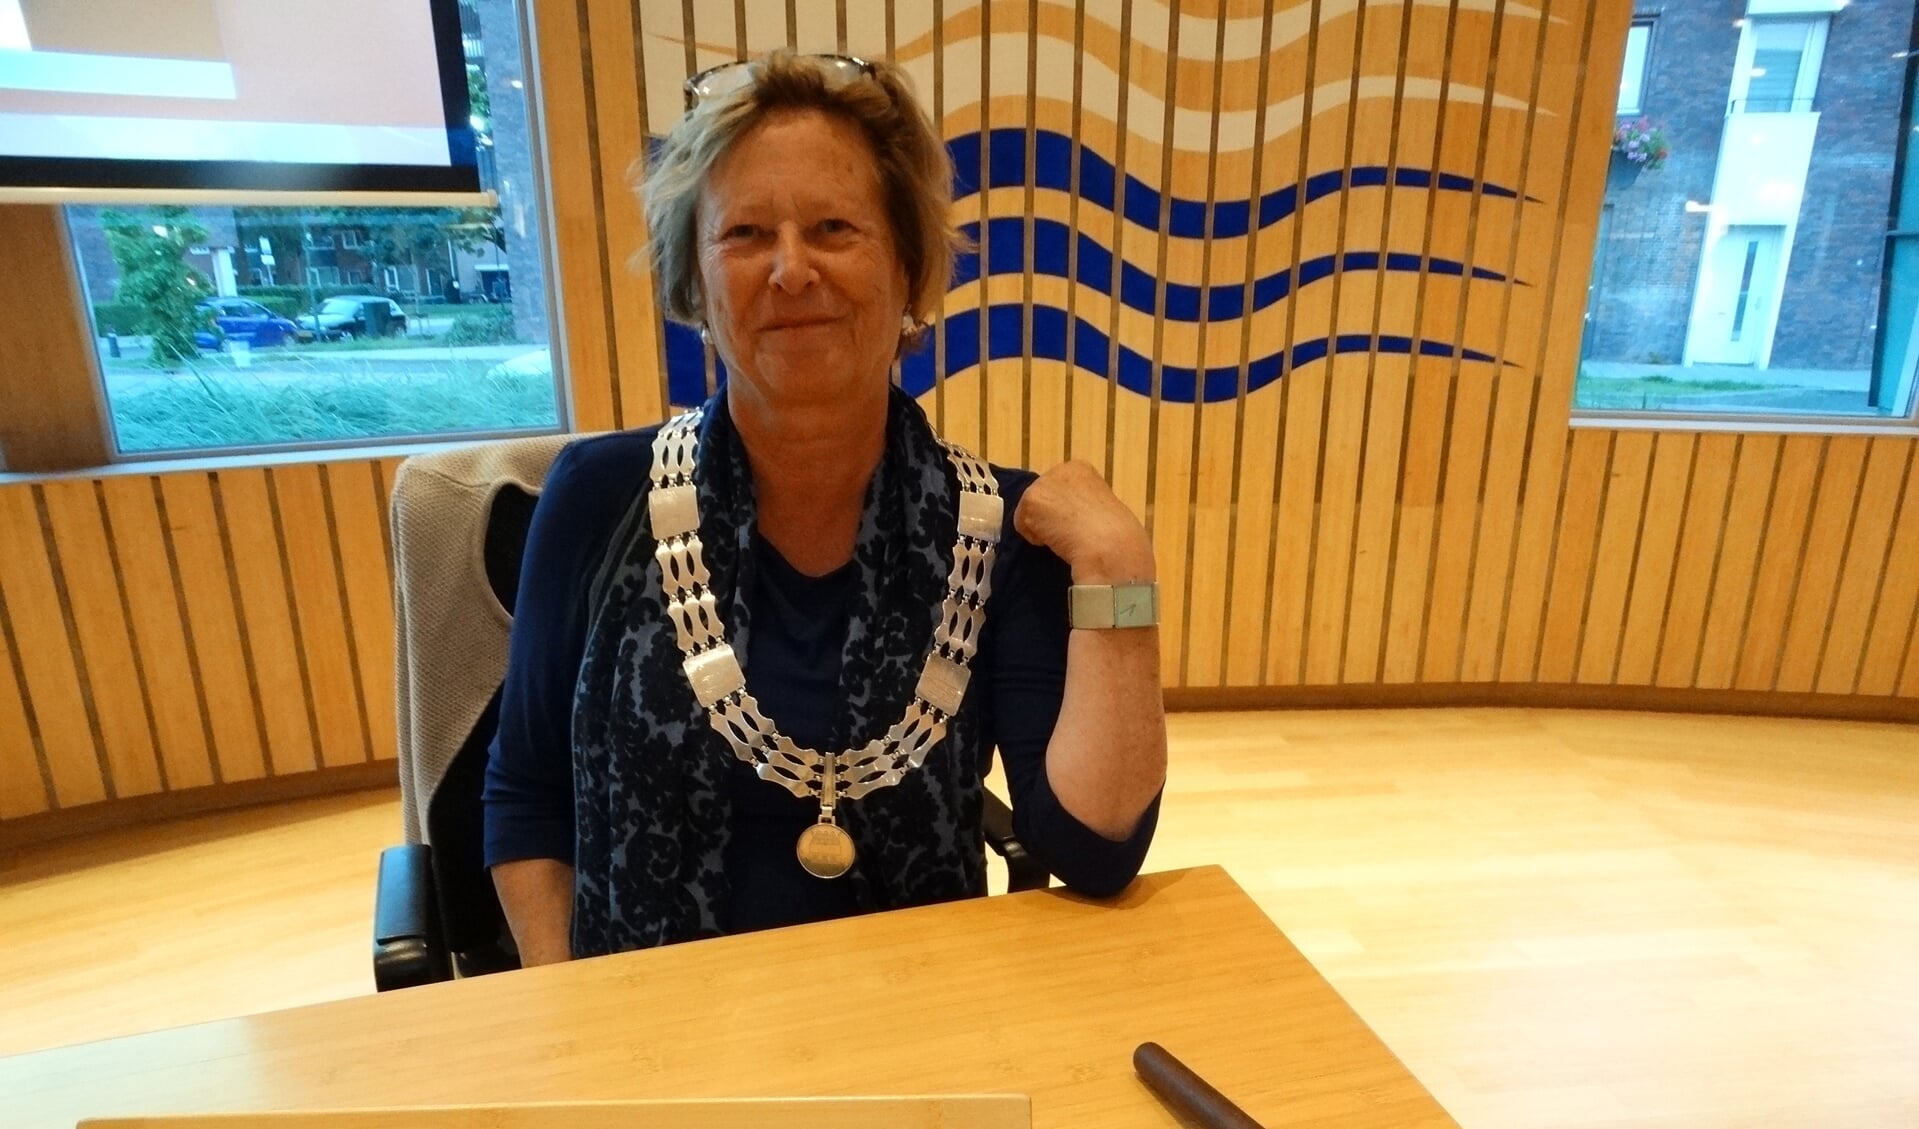 Op 16 december zal Albertine van Vliet de burgemeesters keten overdragen aan een nu nog onbekende nieuwe Wijkse burgemeester